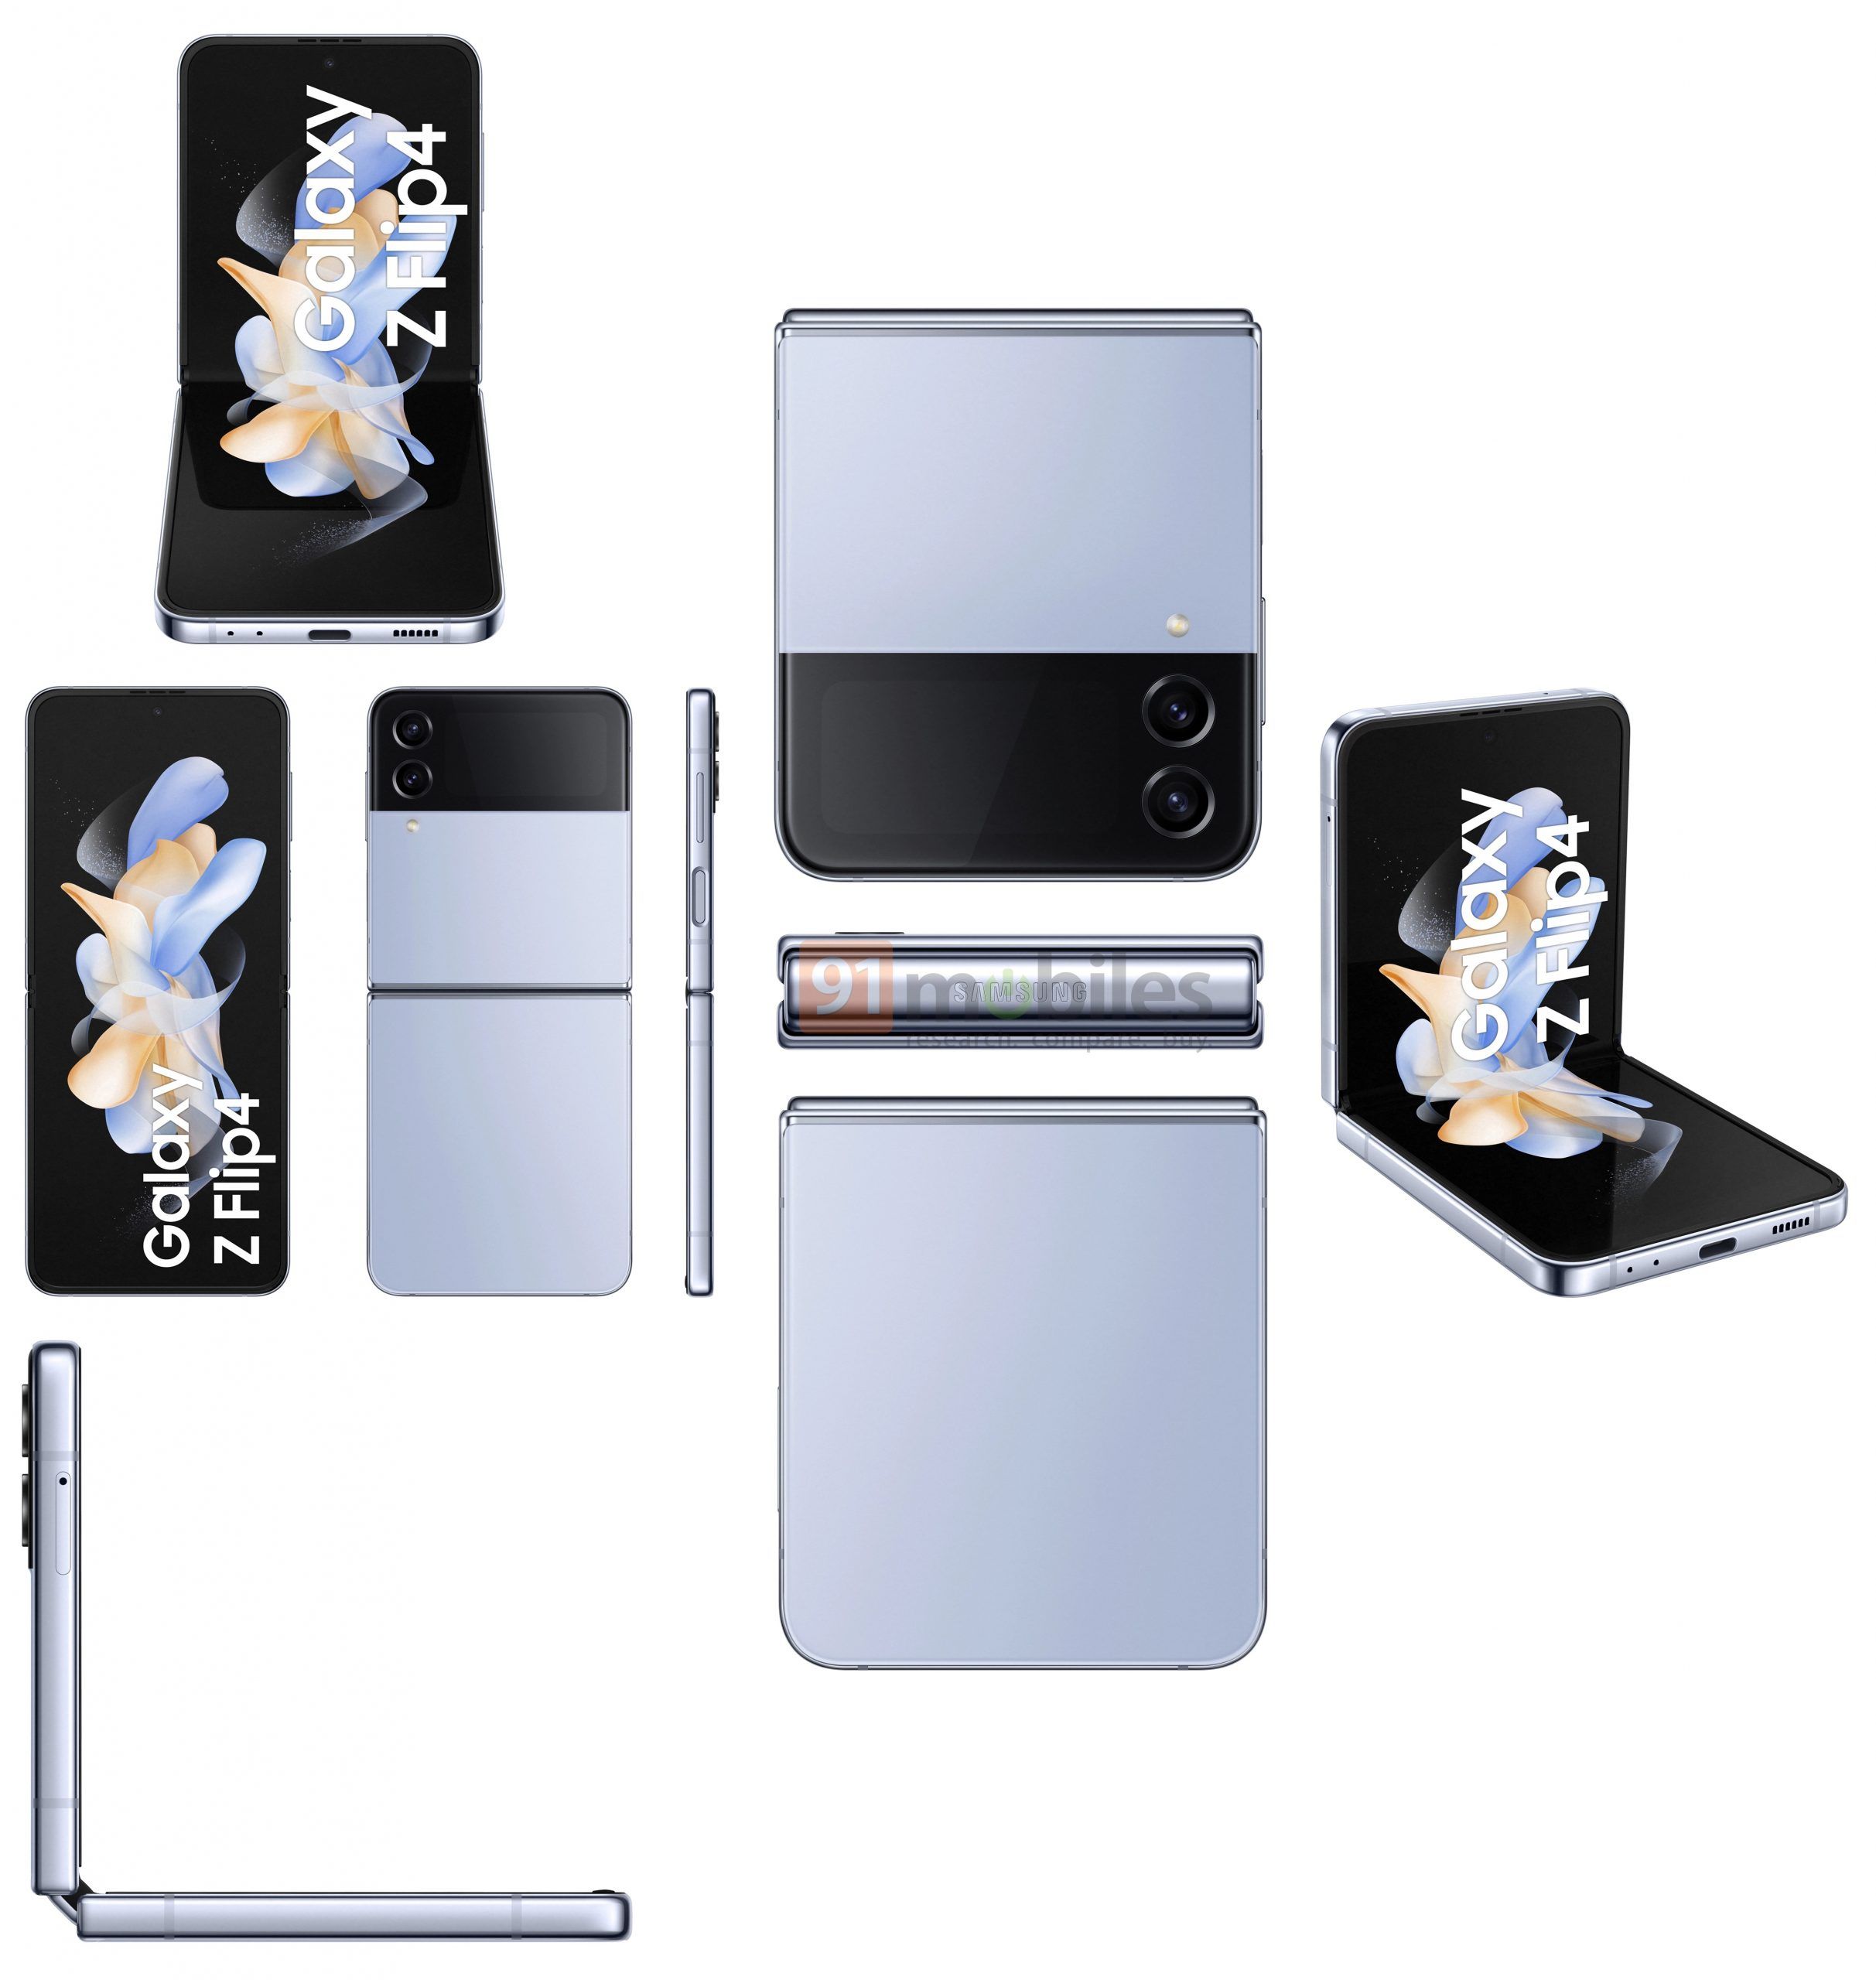 เผยภาพเรนเดอร์แบบเต็ม ๆ ครบ ๆ ของ Samsung Galaxy Z Fold4 / Galaxy Z Flip4 และอุปกรณ์เสริม